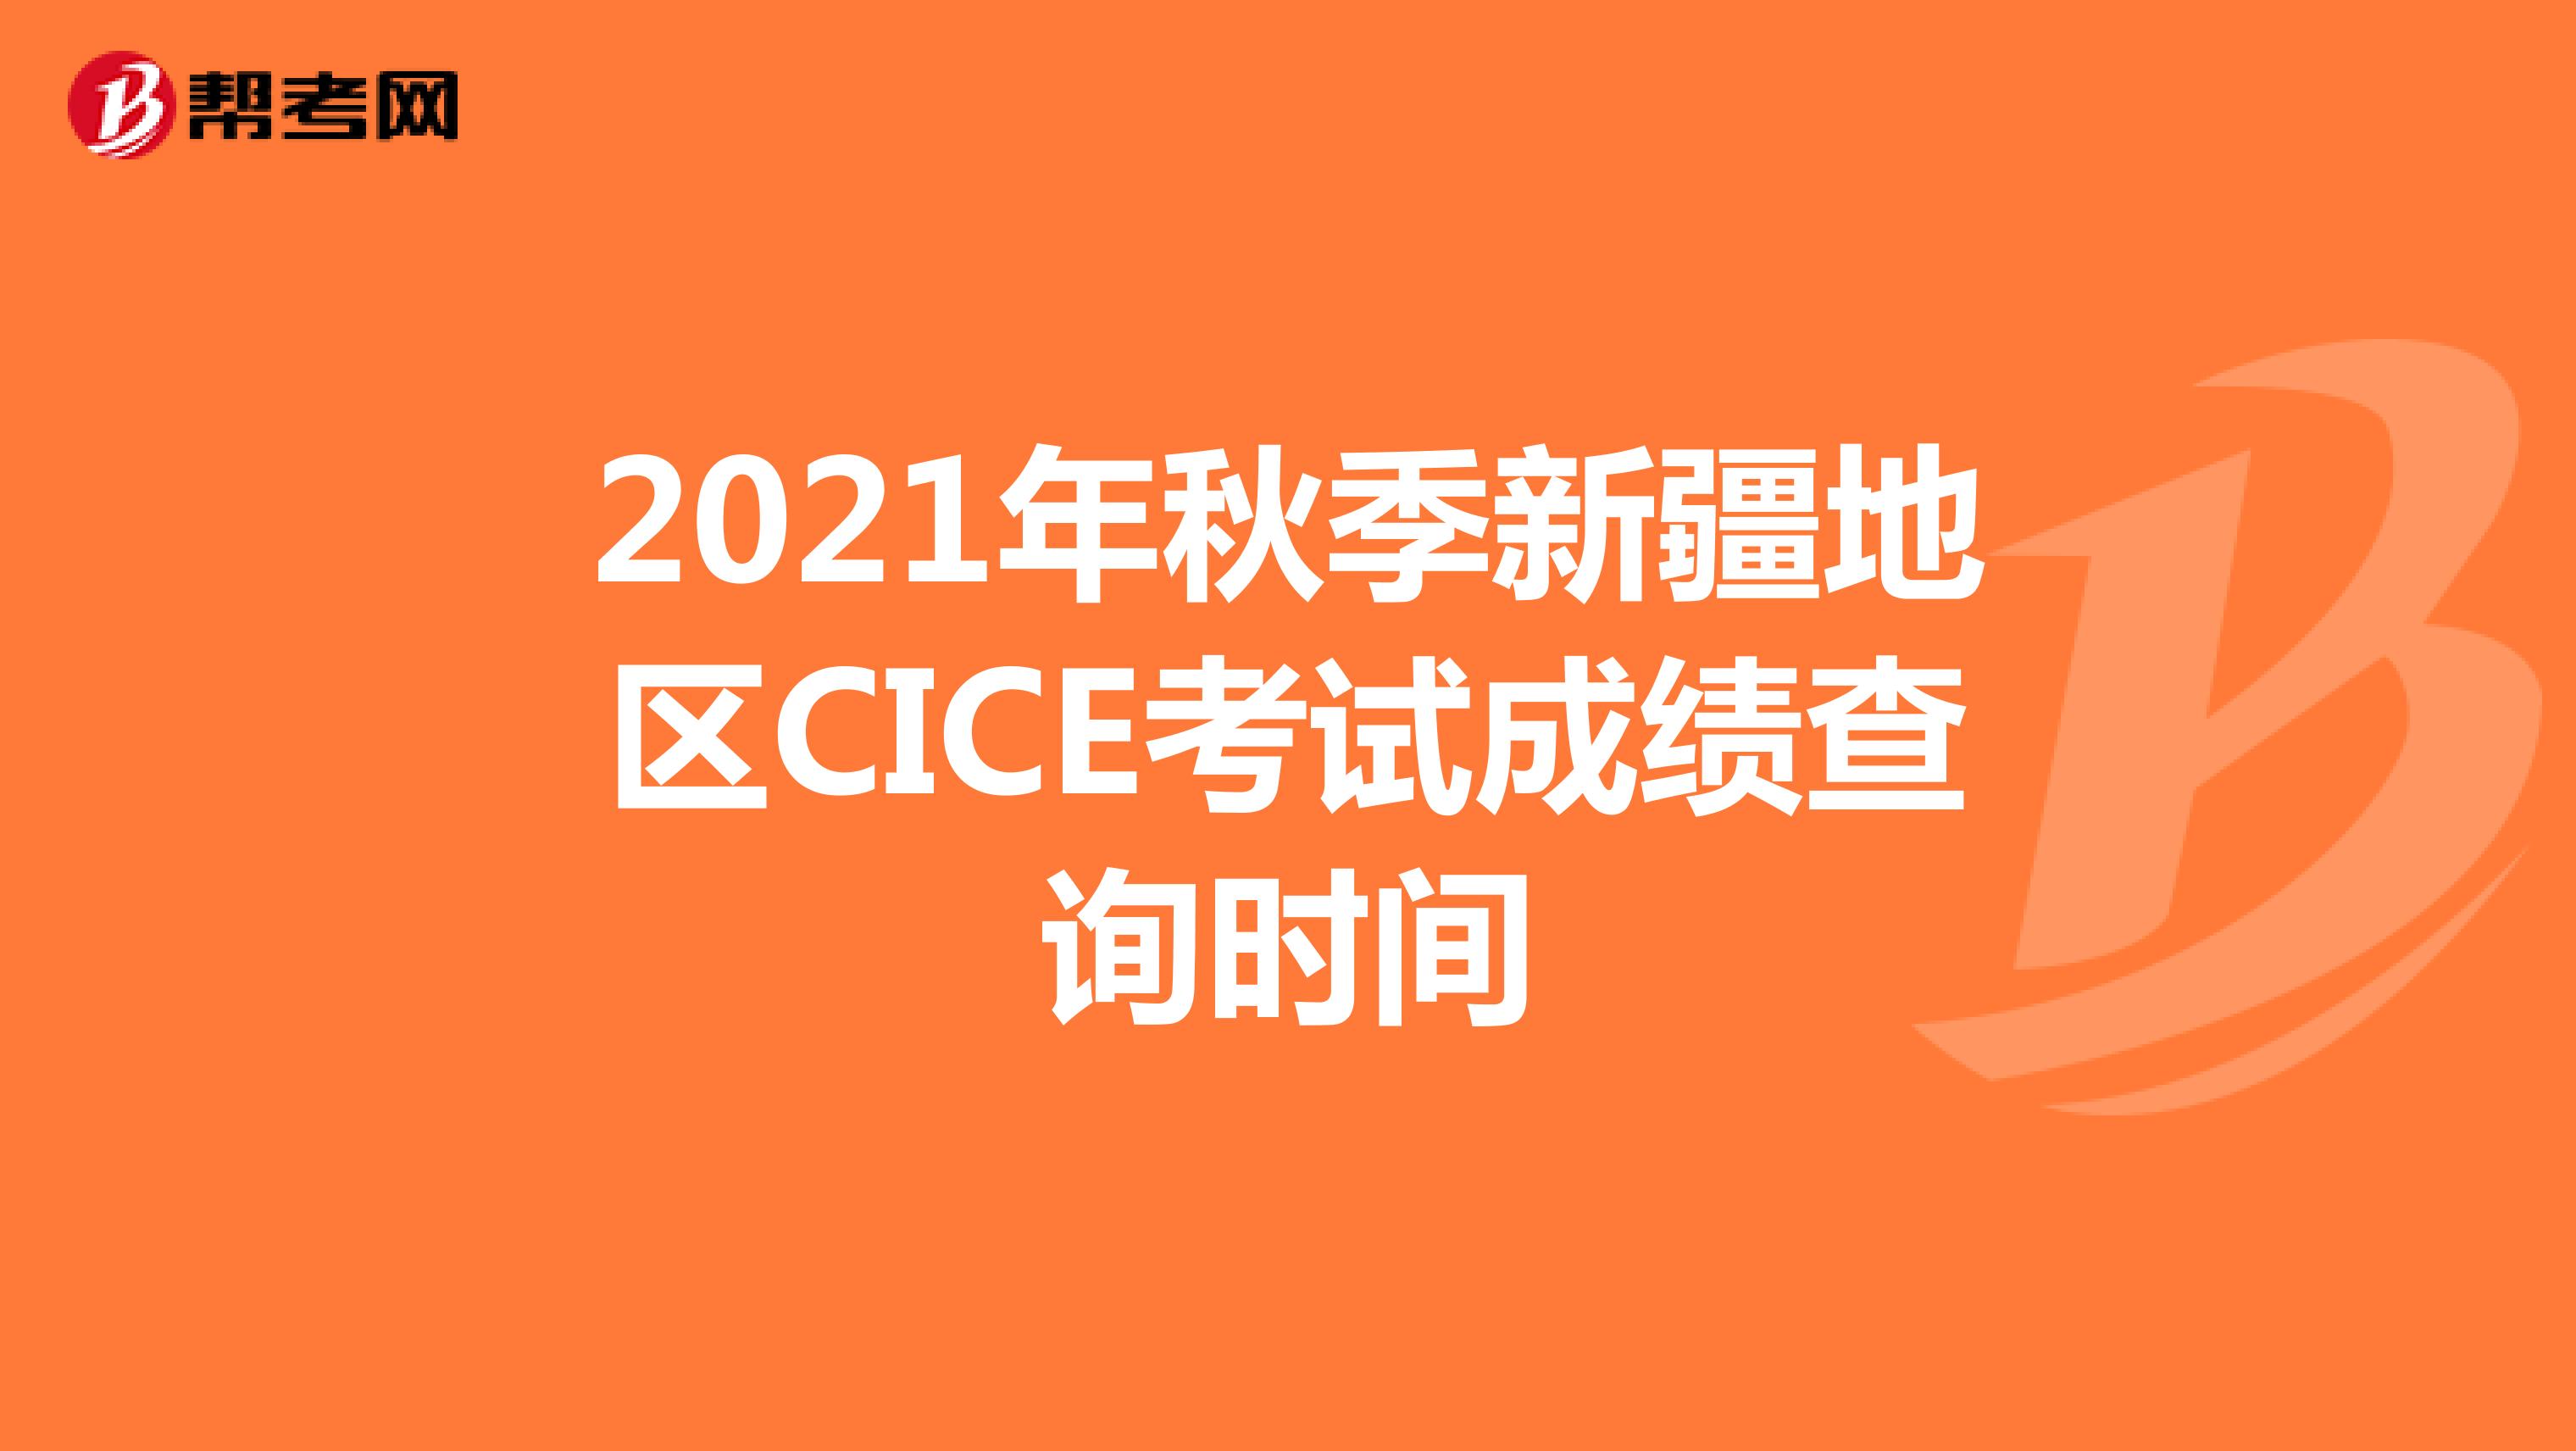 2021年秋季新疆地区CICE考试成绩查询时间